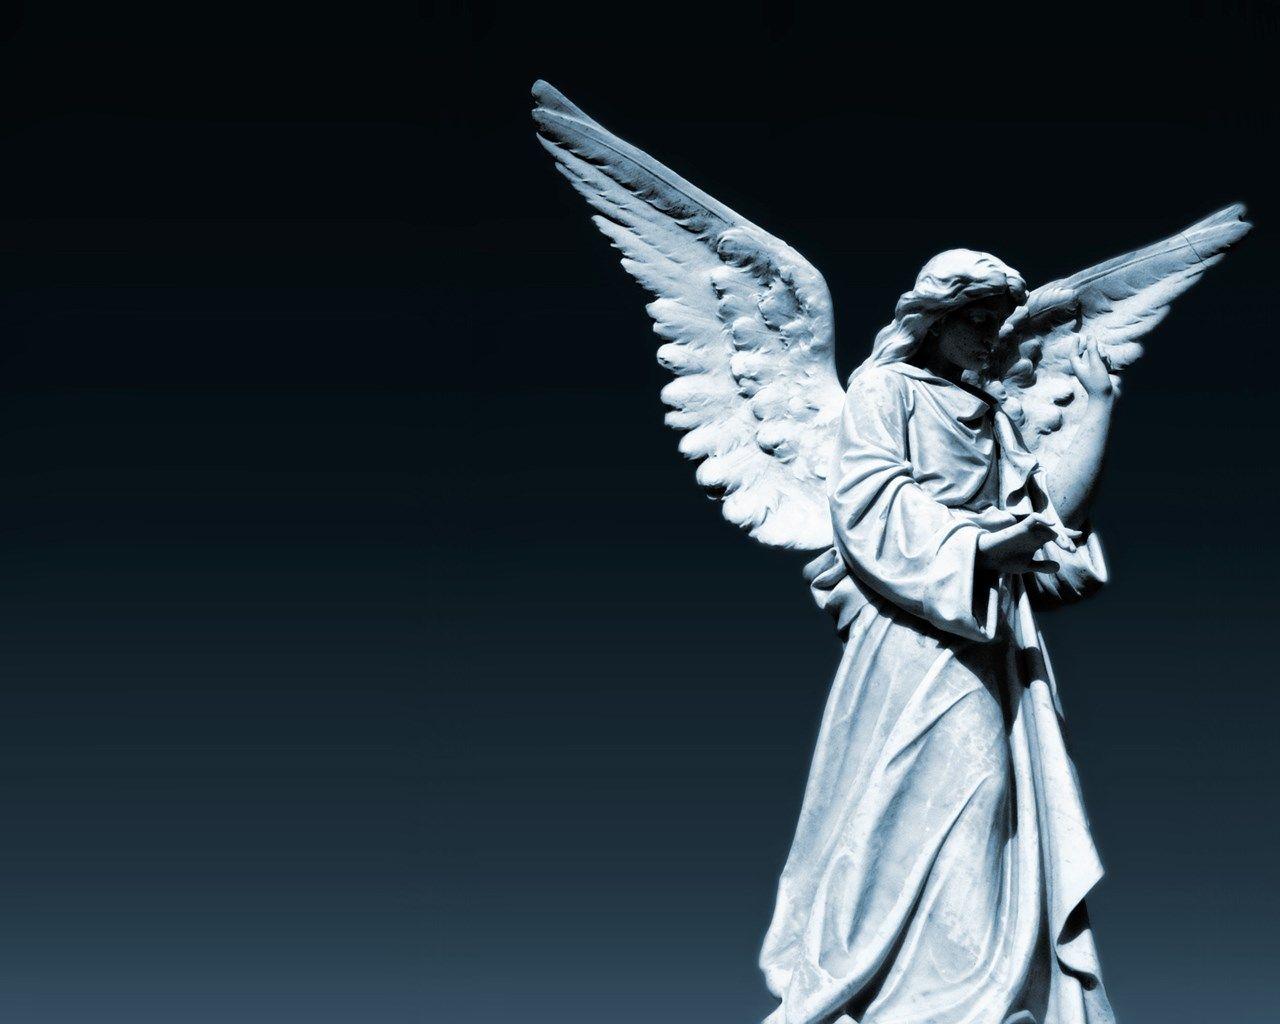 Brett Bush Resolution Wallpaper angel statue image